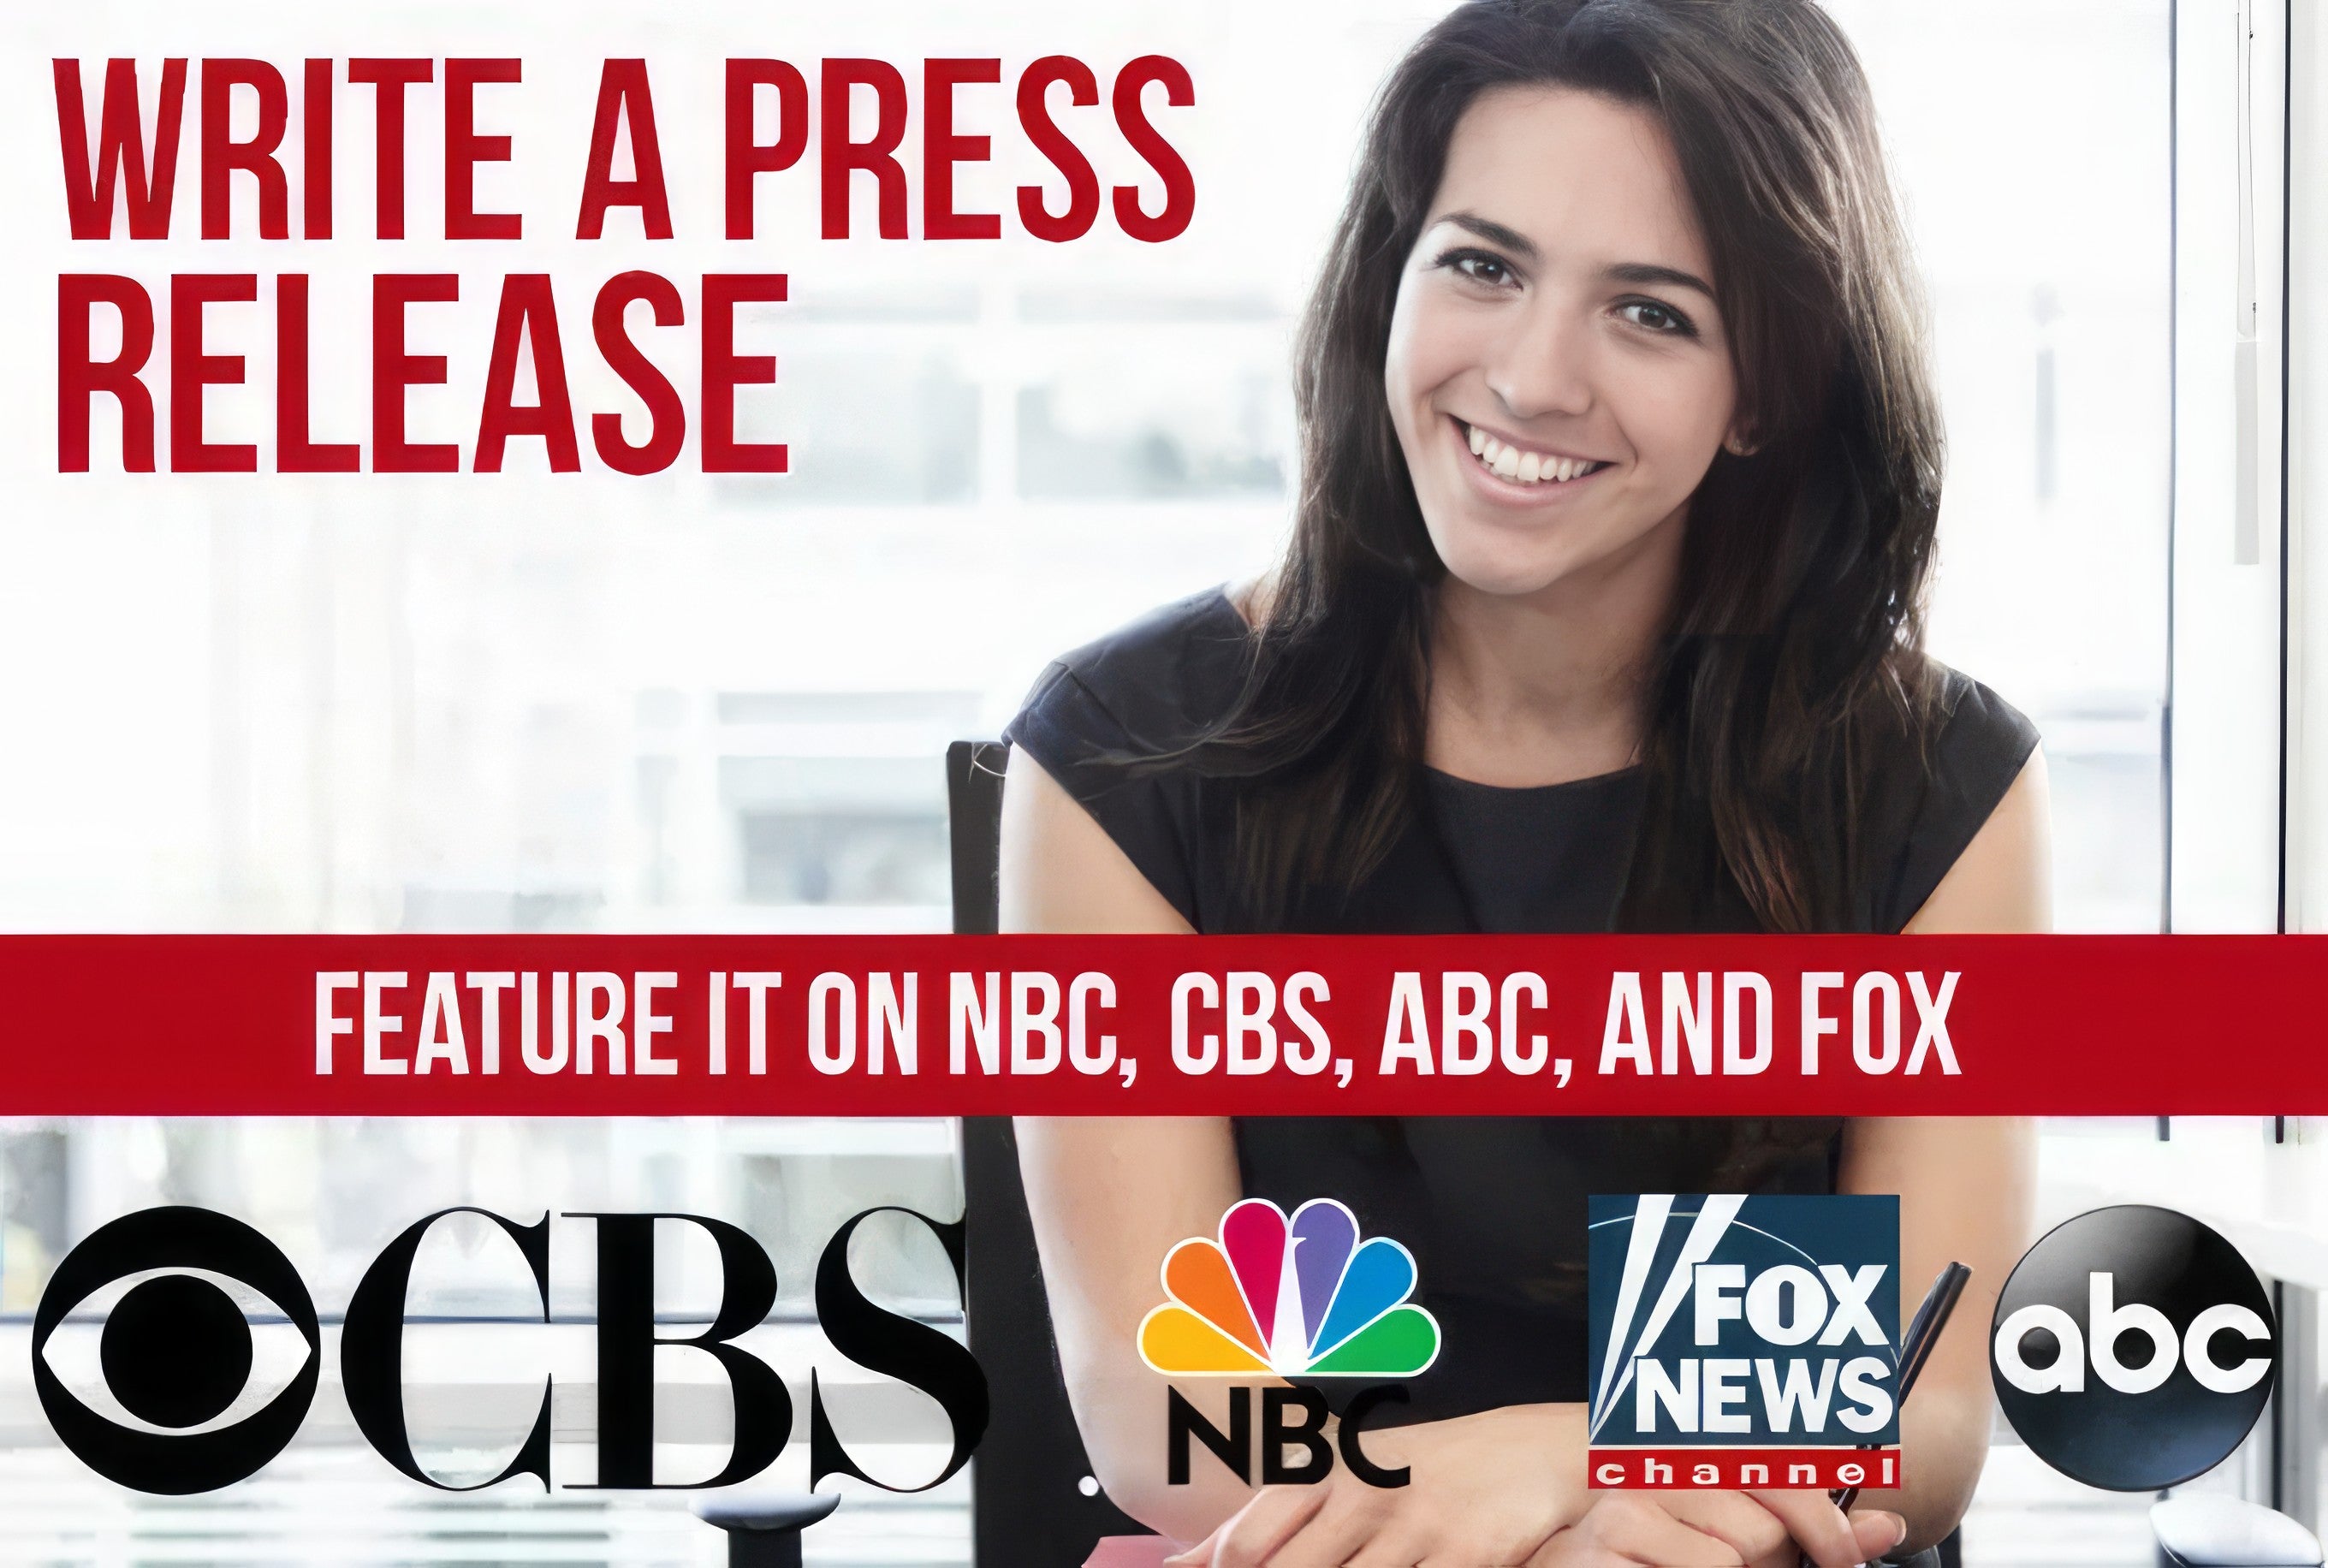 Skicka pressmeddelande till Google News, CBS, Fox, ABC, 500+ News